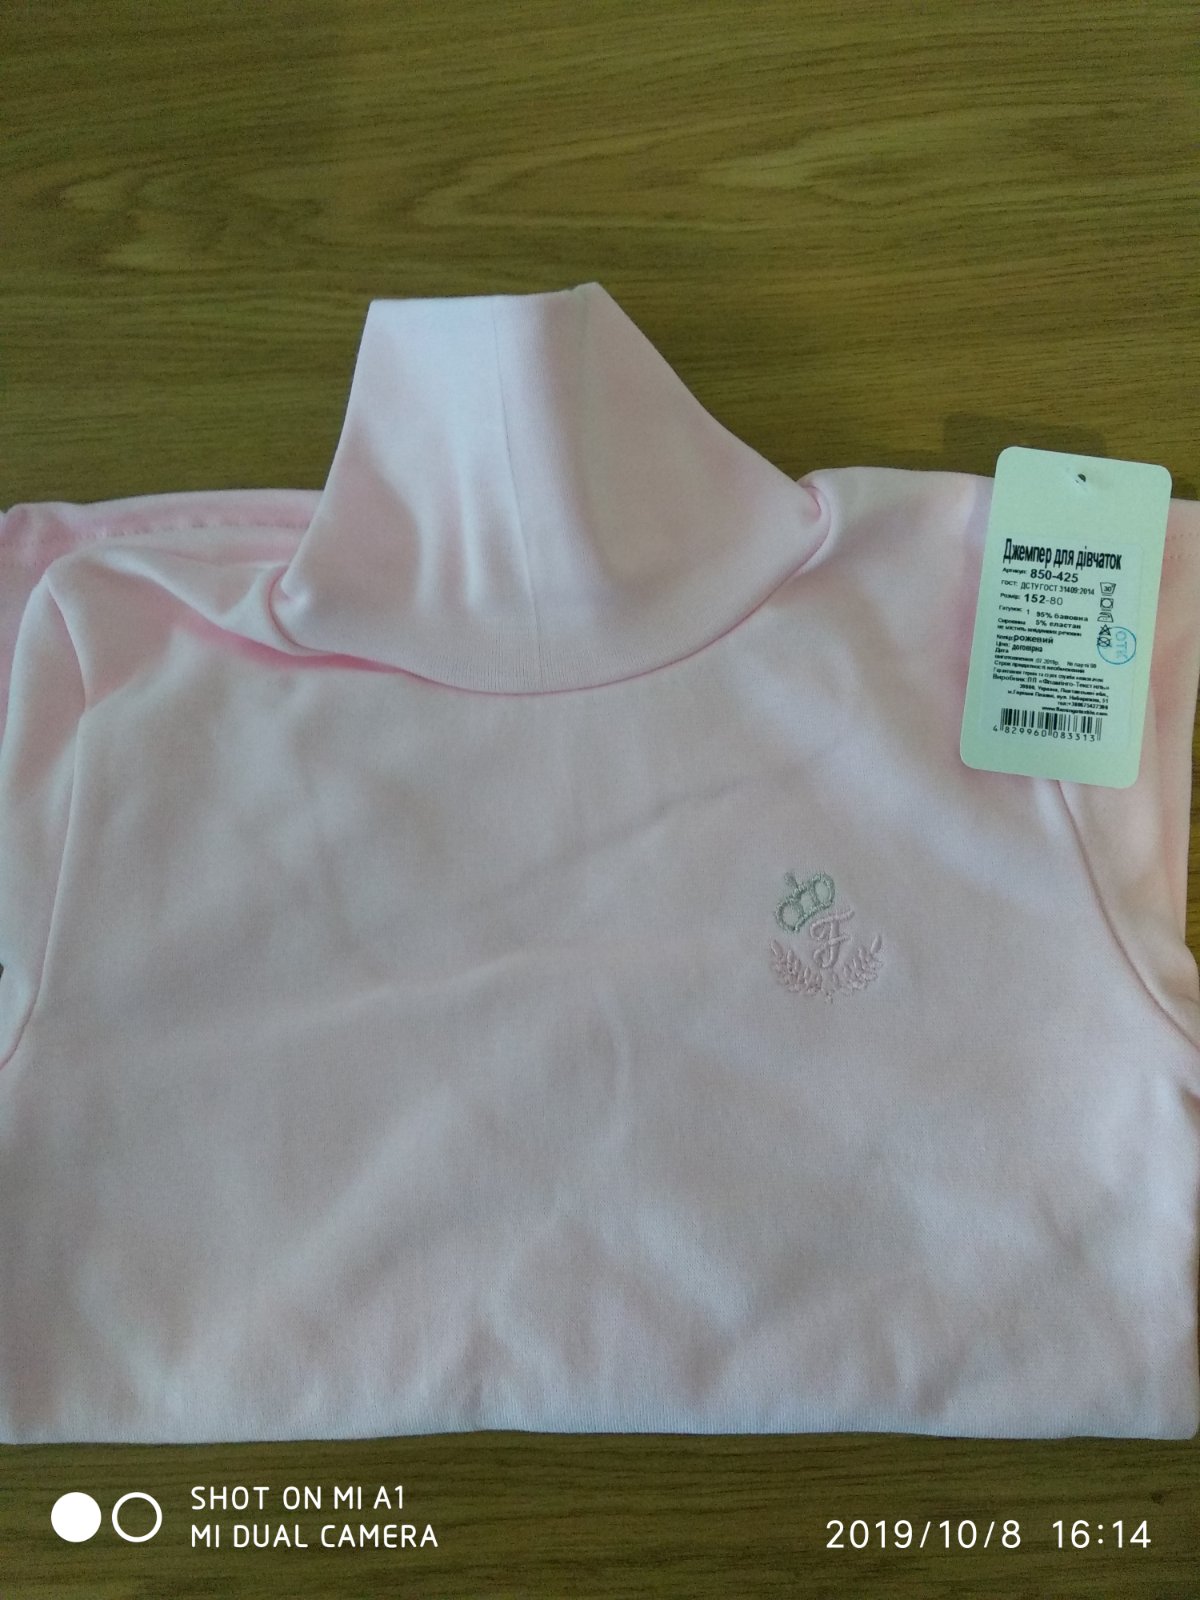 

Гольф для девочек Фламинго текстиль 850-425 р80 152см розовый 58252